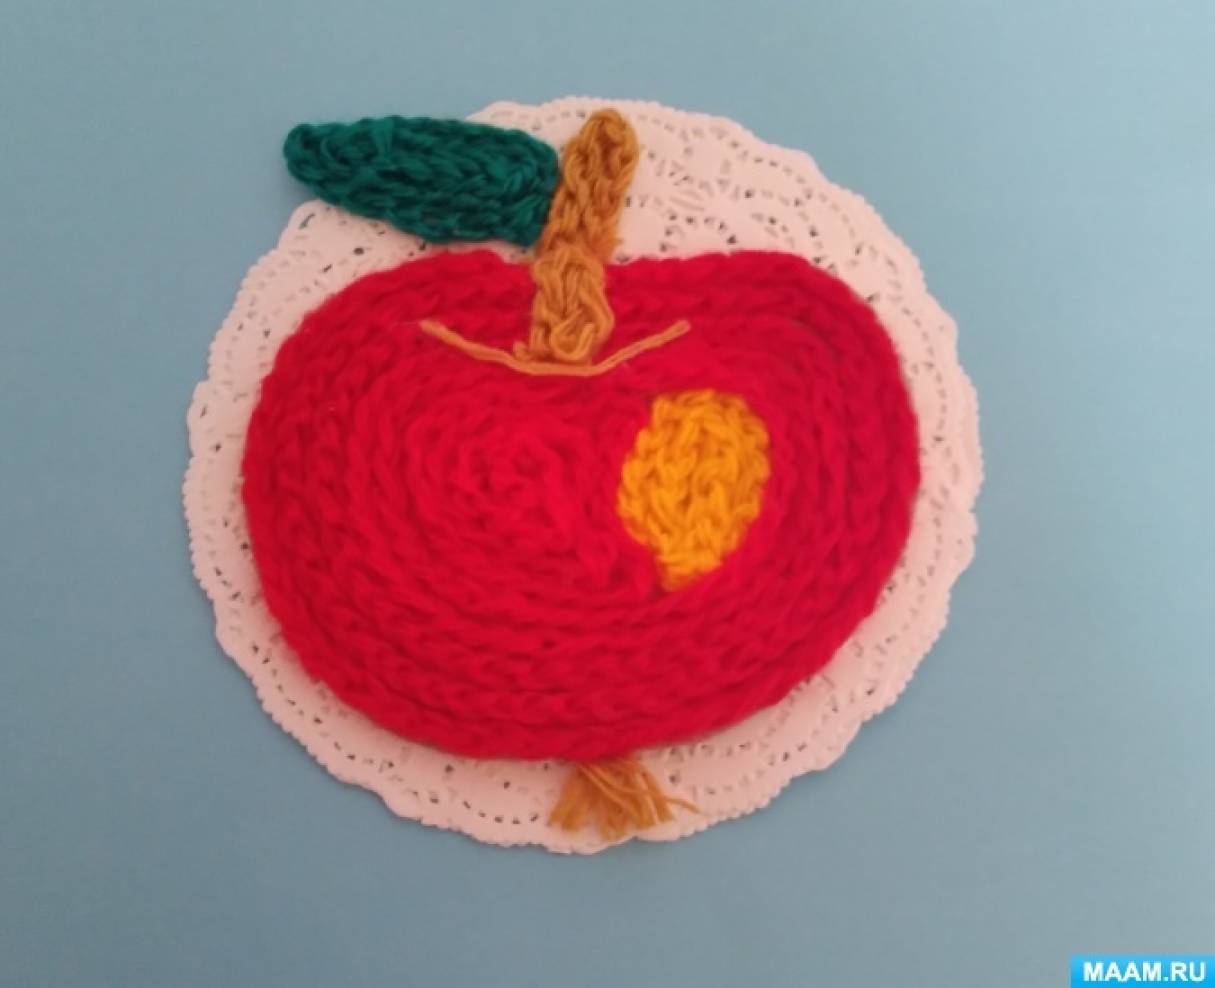 Мастер-класс по ручному труду «Румяное яблочко» из шерстяных ниток для детей от 6 лет ко Дню яблок на МAAM